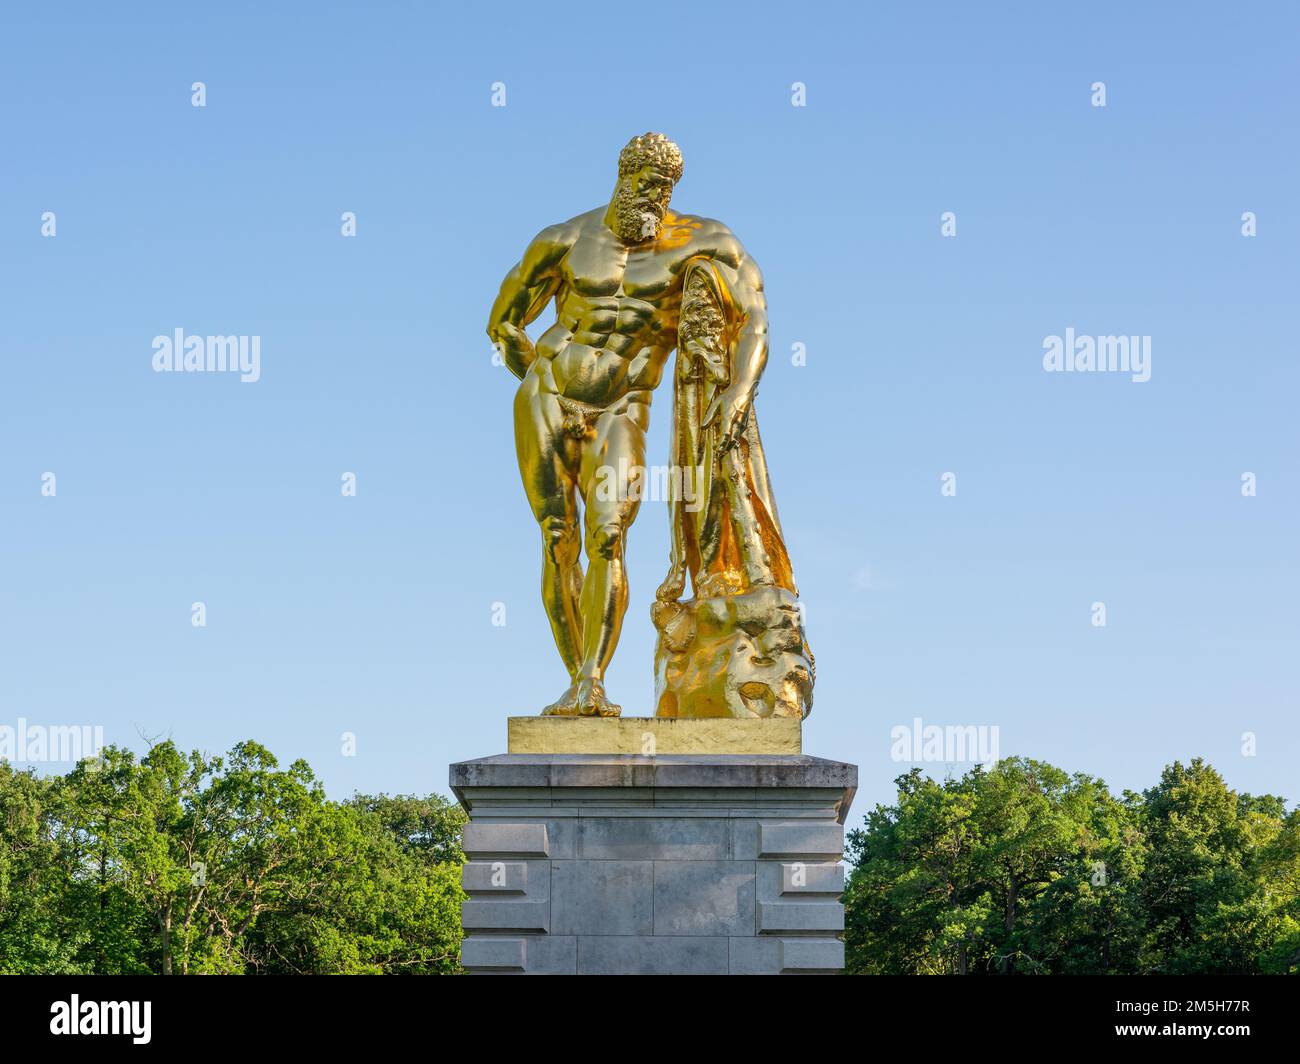 Maincy, France - 21 mai 2022 : vue rapprochée d'une sculpture à feuilles d'or représentant une copie d'un Hercule hellénistique dans un ga classique français Banque D'Images